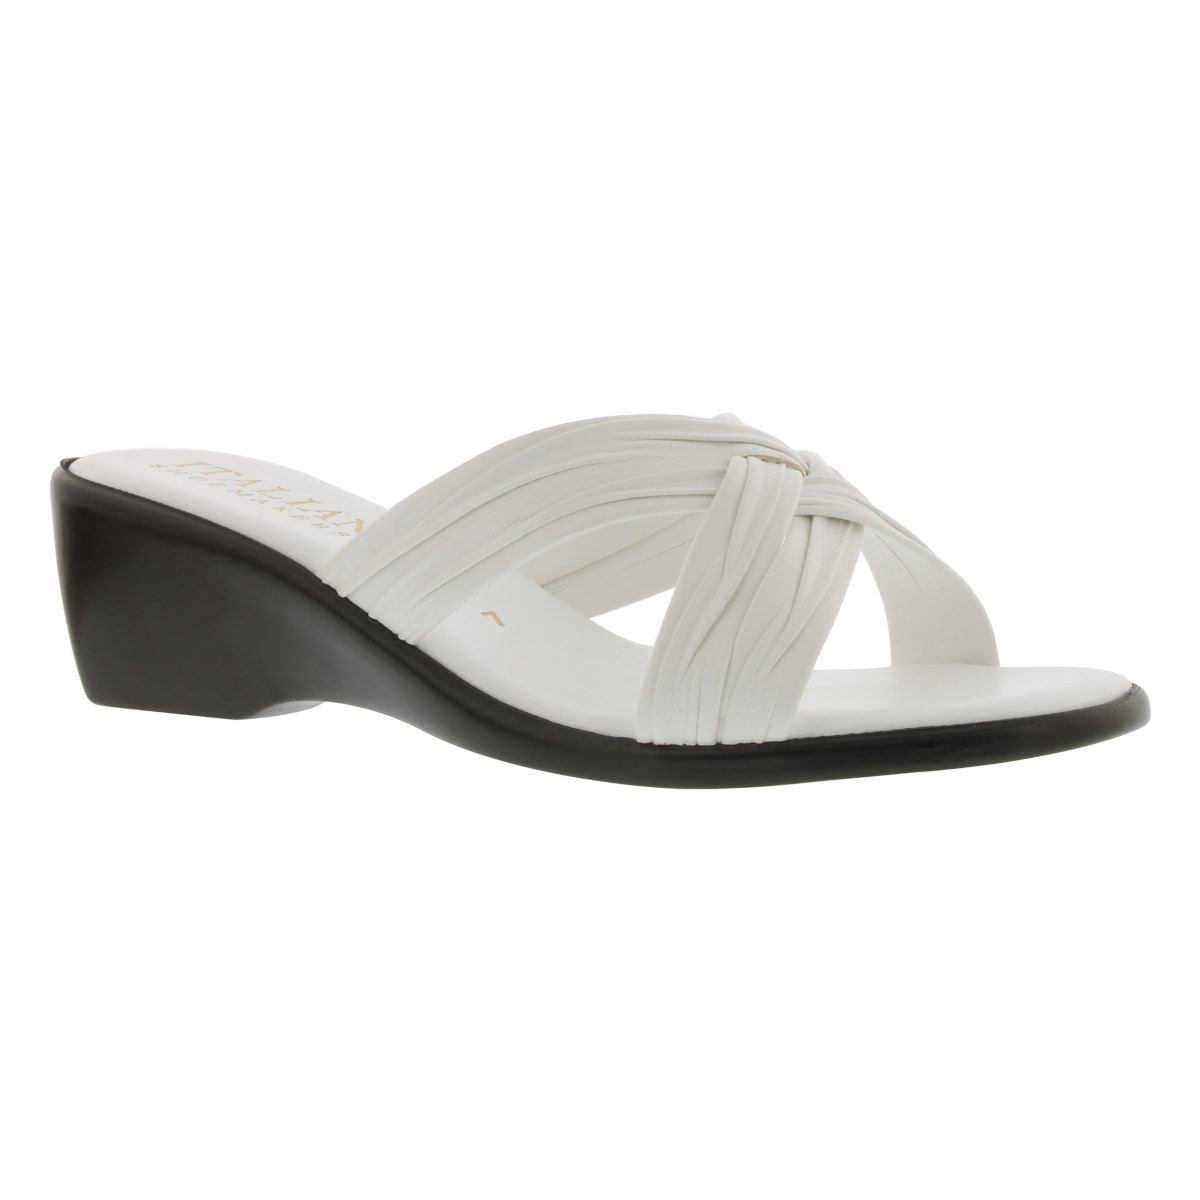 Women's CROSS VAMP WEDGE white slide sandals